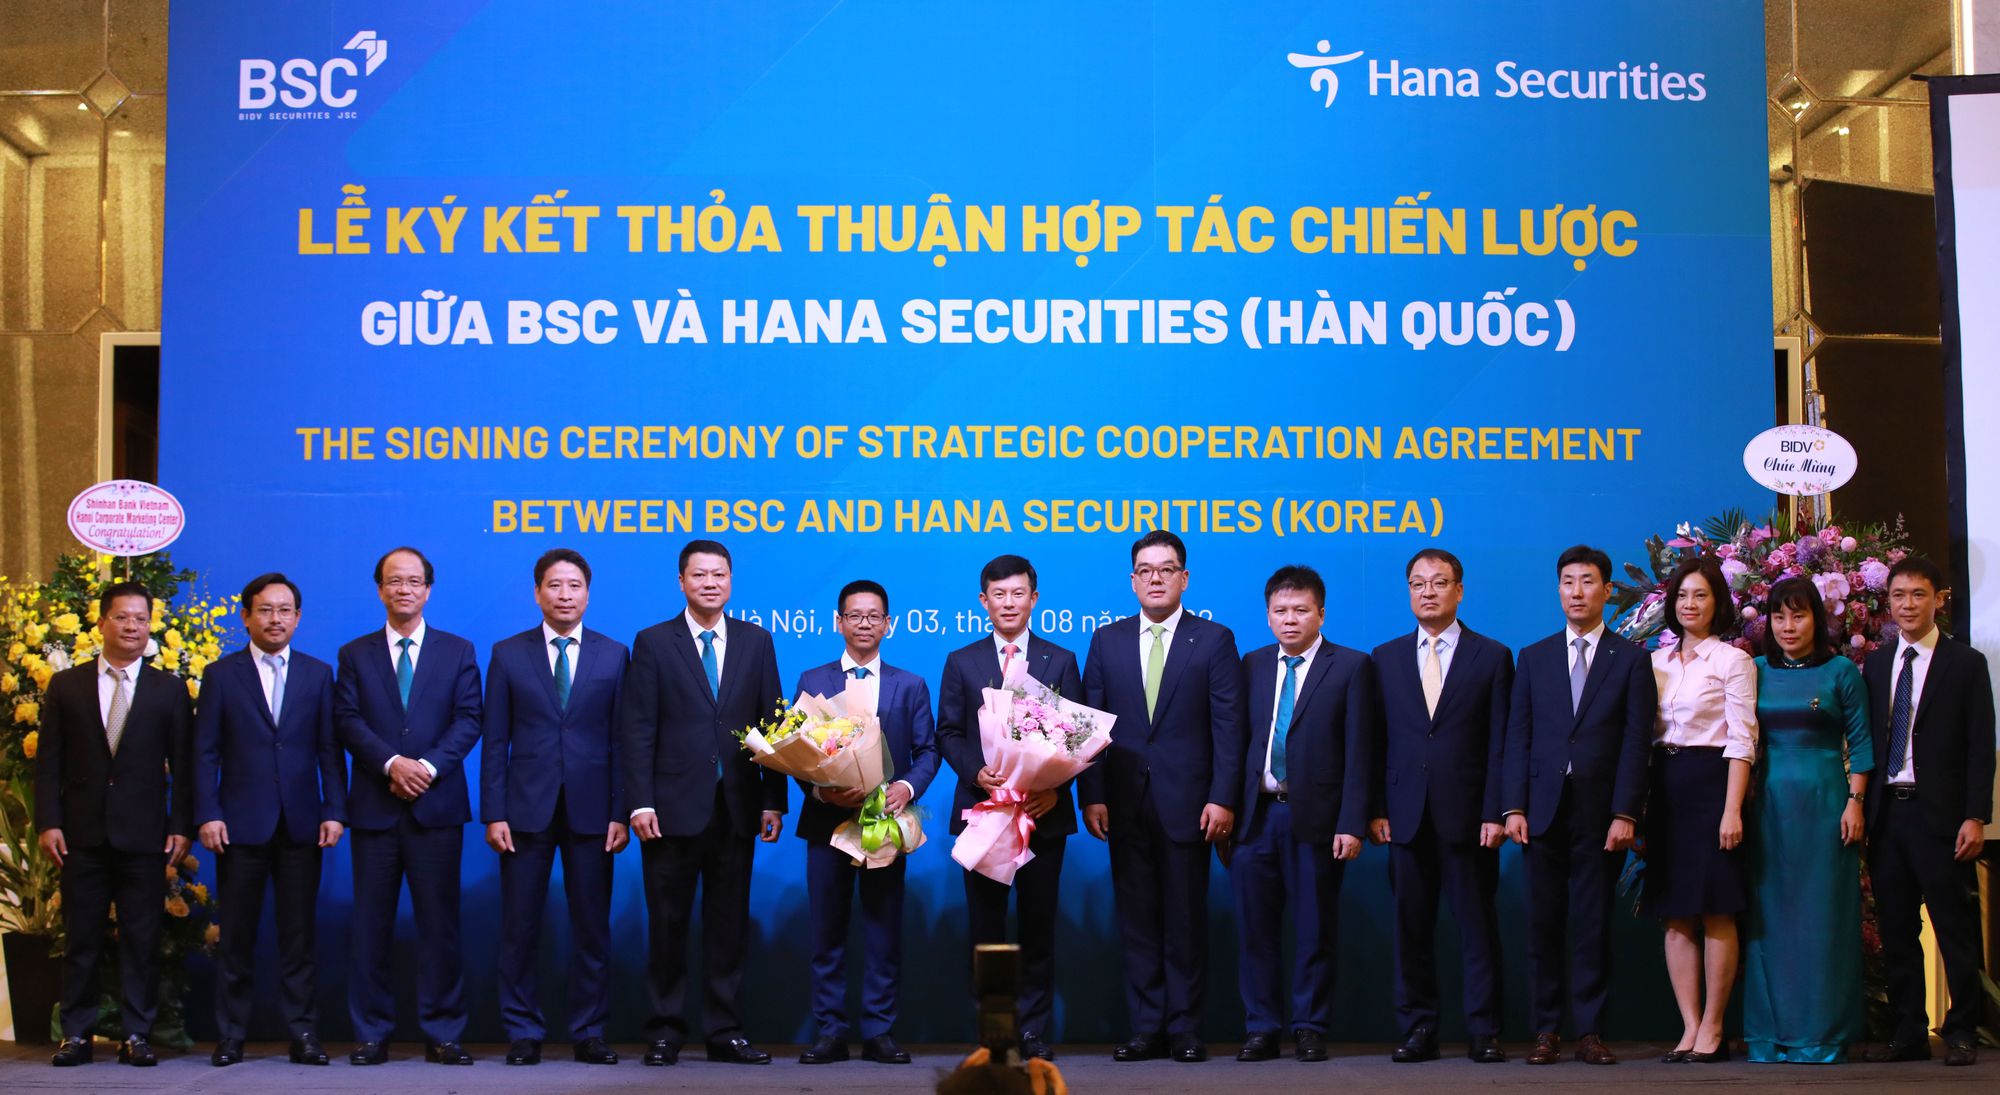 BSC và HSC (Hàn Quốc) ký kết thỏa thuận hợp tác chiến lược - Ảnh 3.